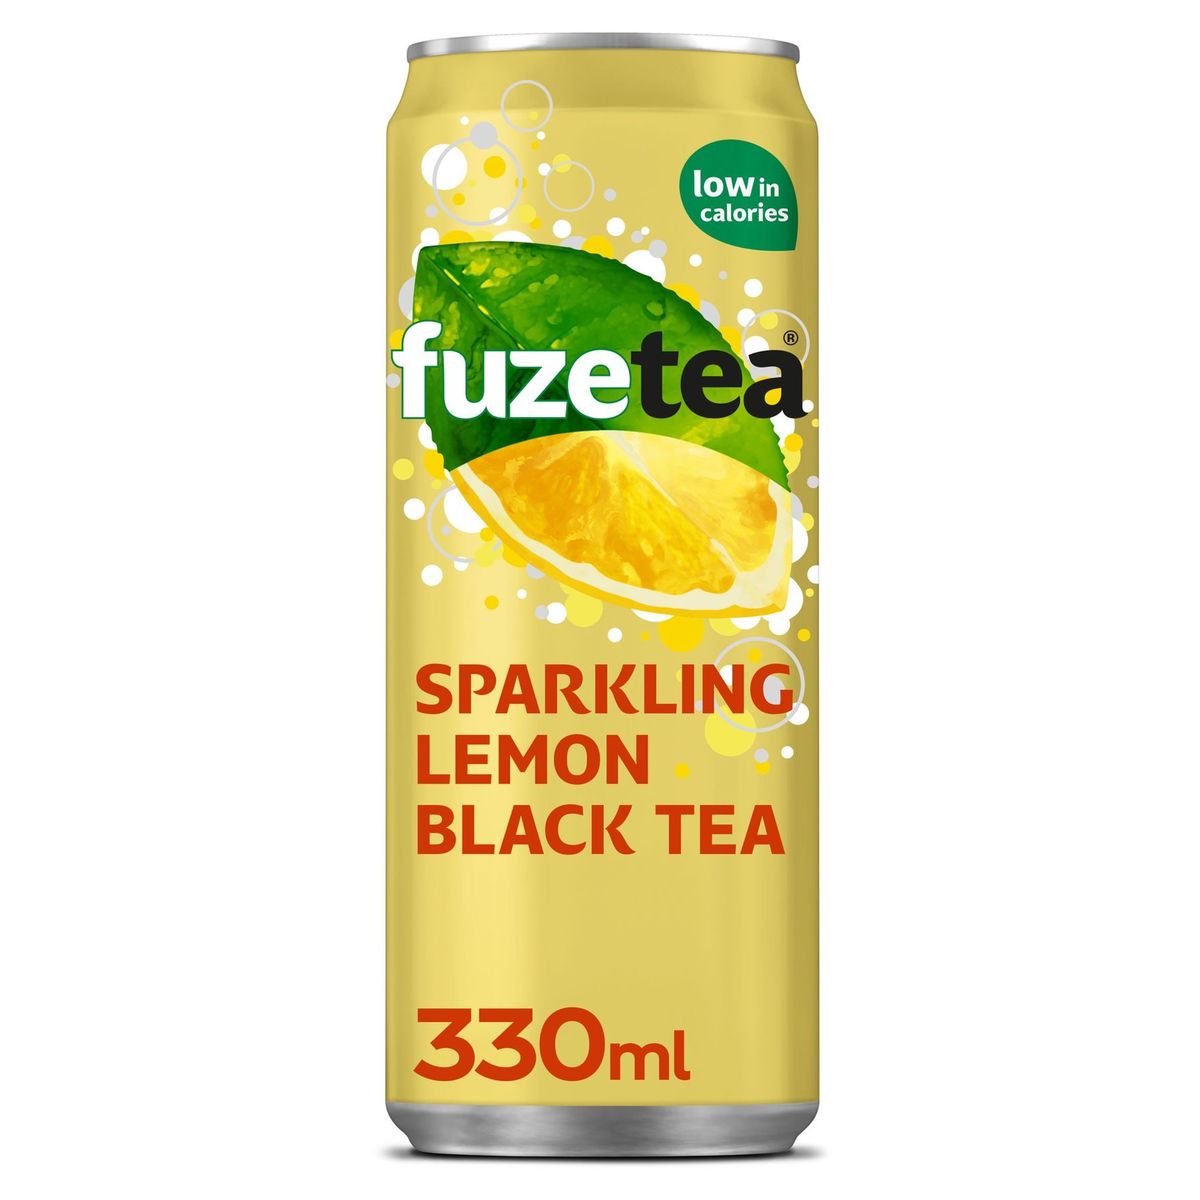 Fuze Tea Sparkling Black Tea Lemon  Iced Tea 330 ml